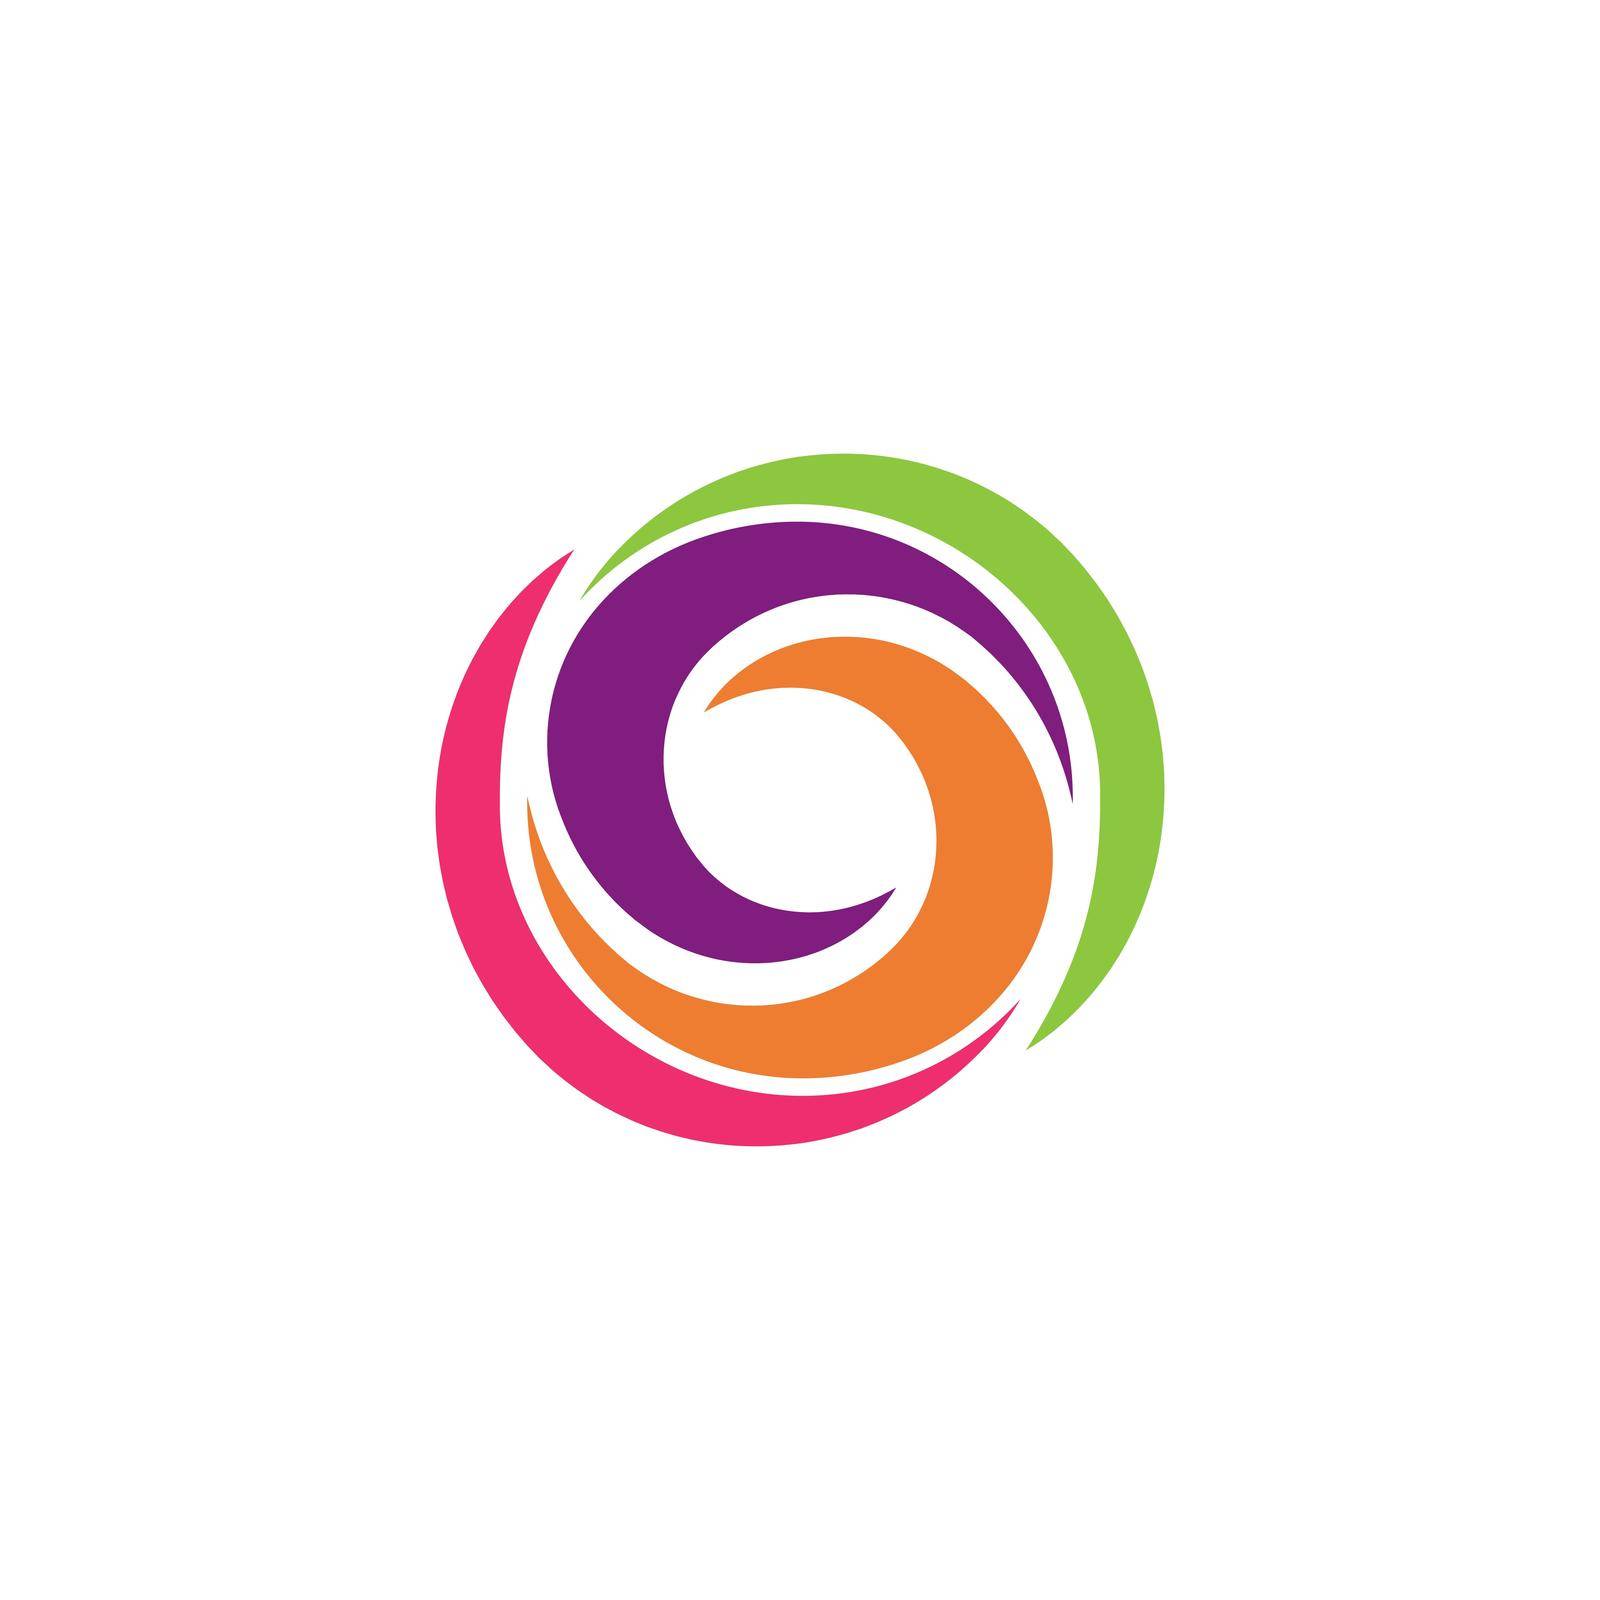 circle logo vector icon template